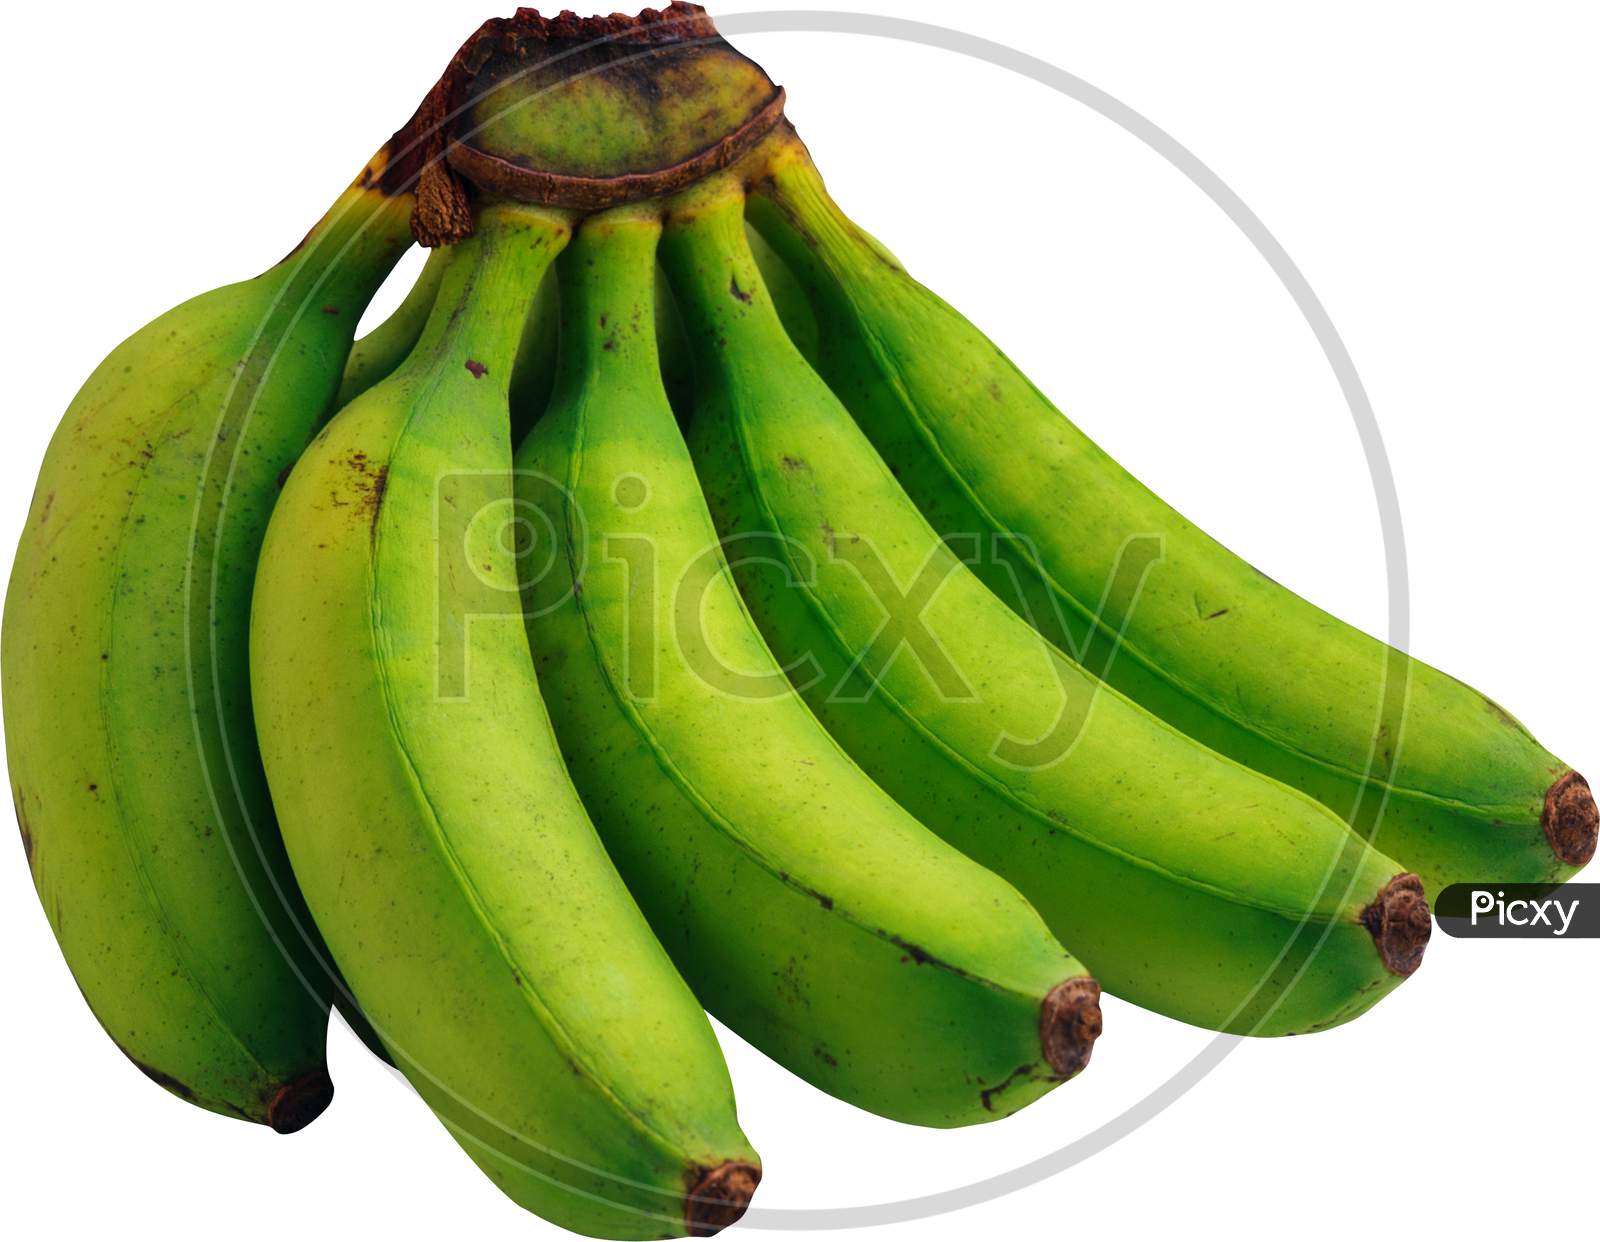 Banana nature gift